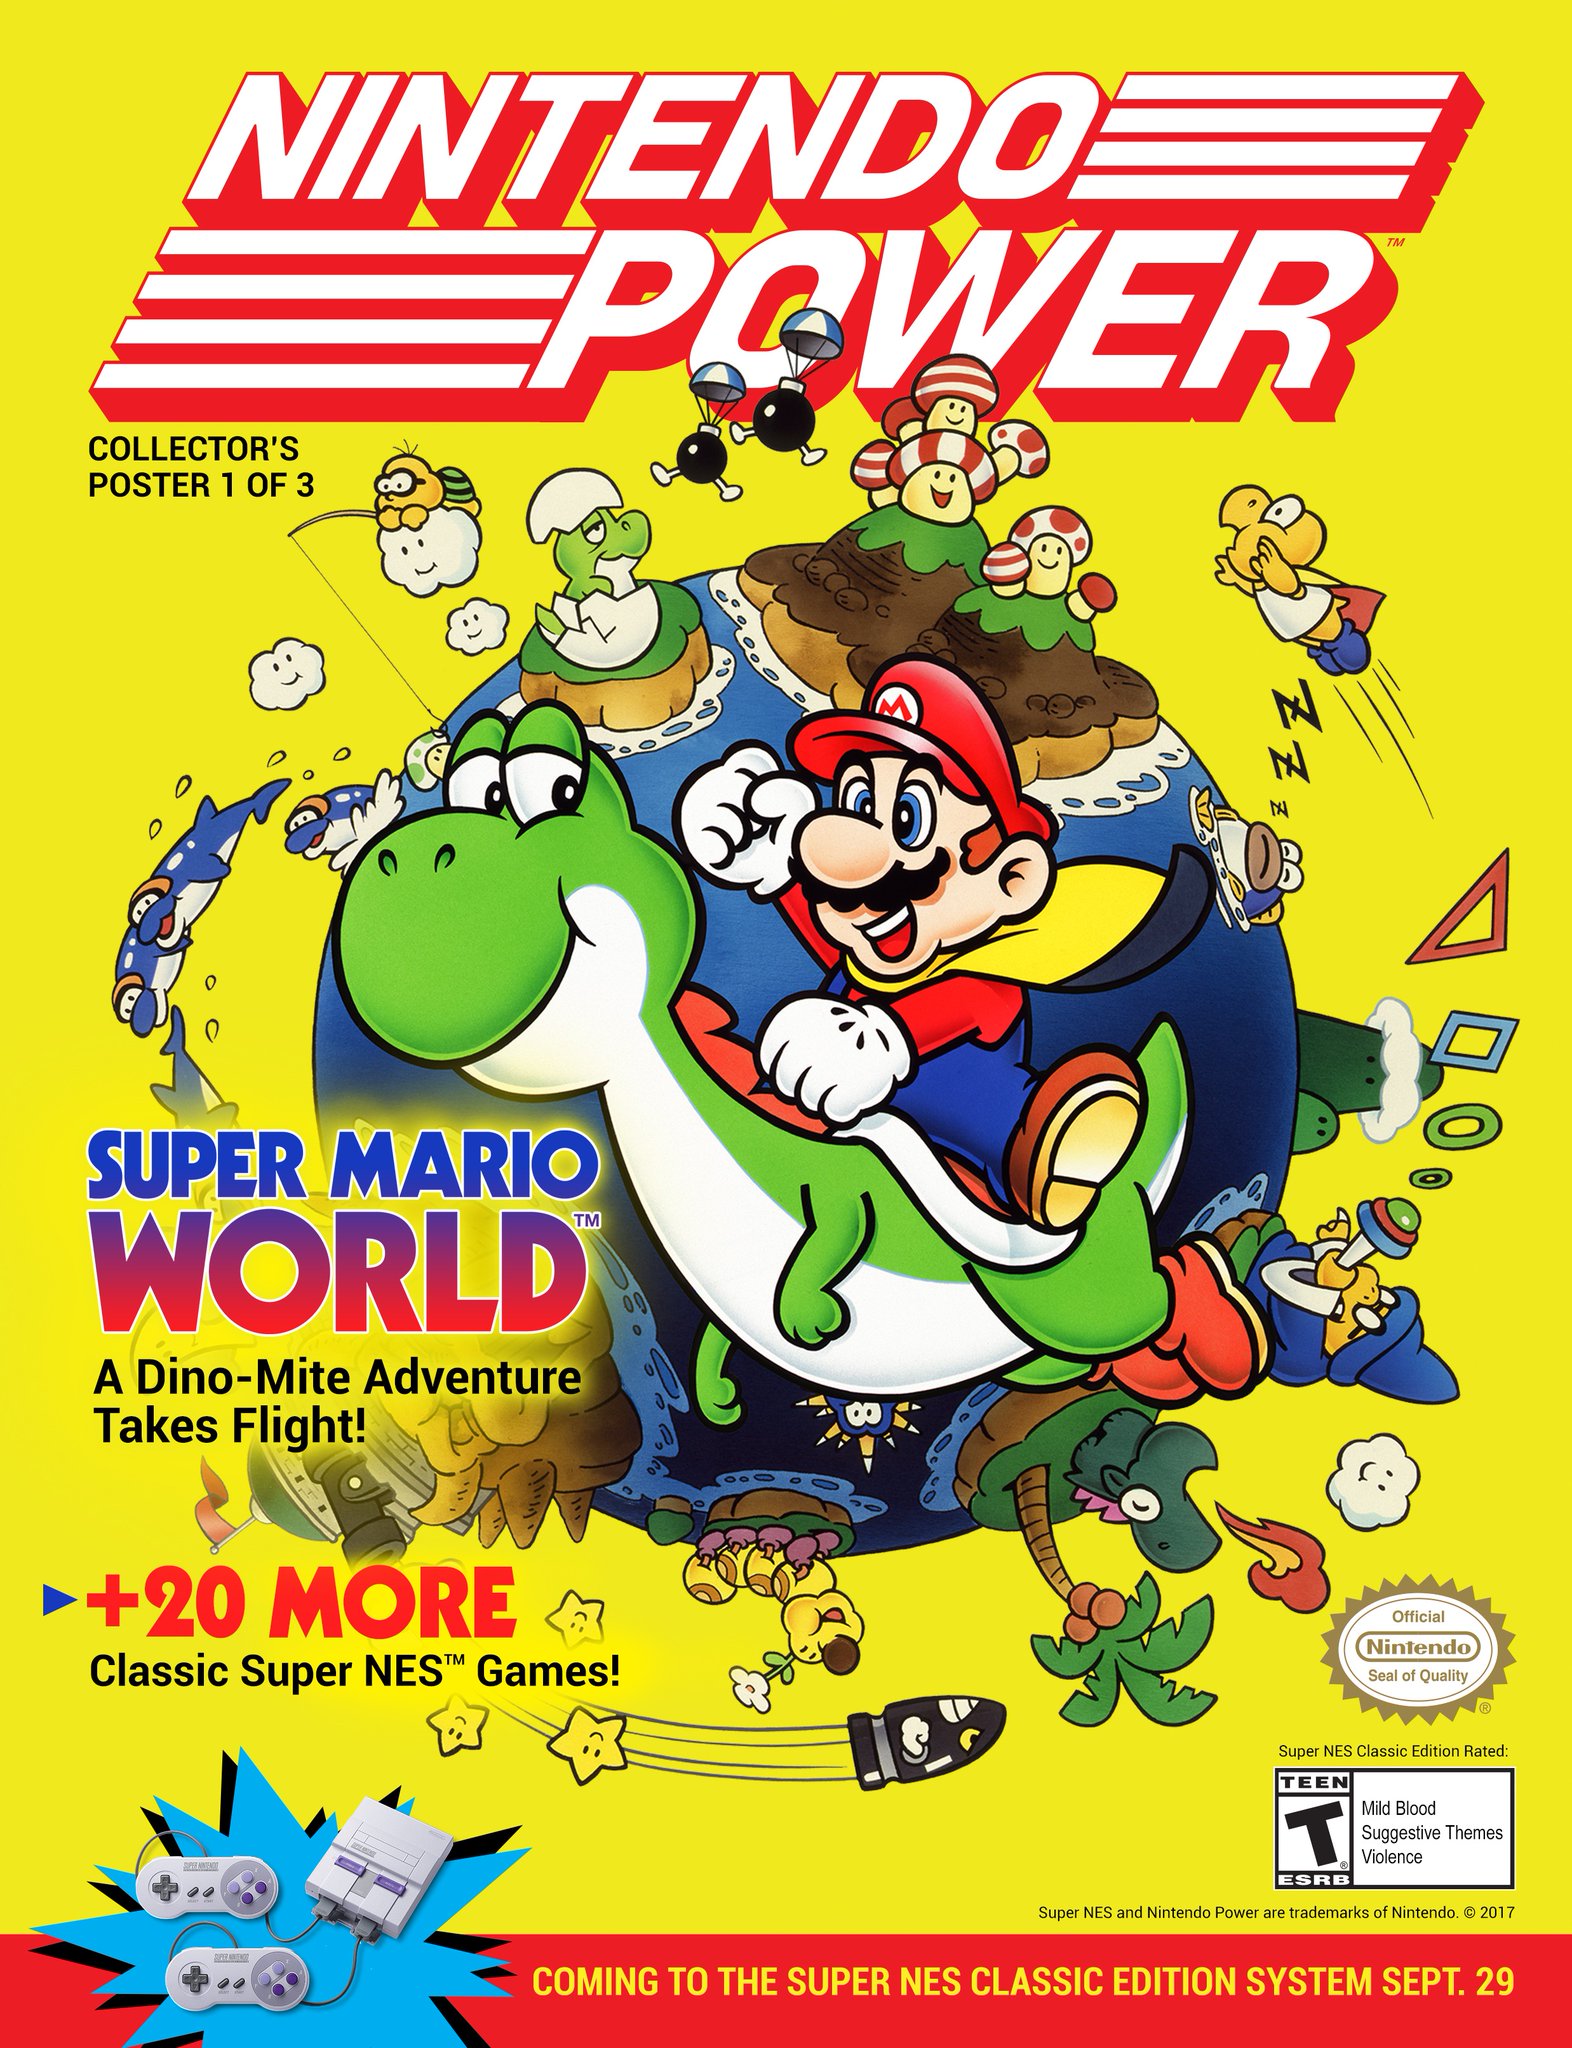 Nintendo Power Super Mario Snes classic